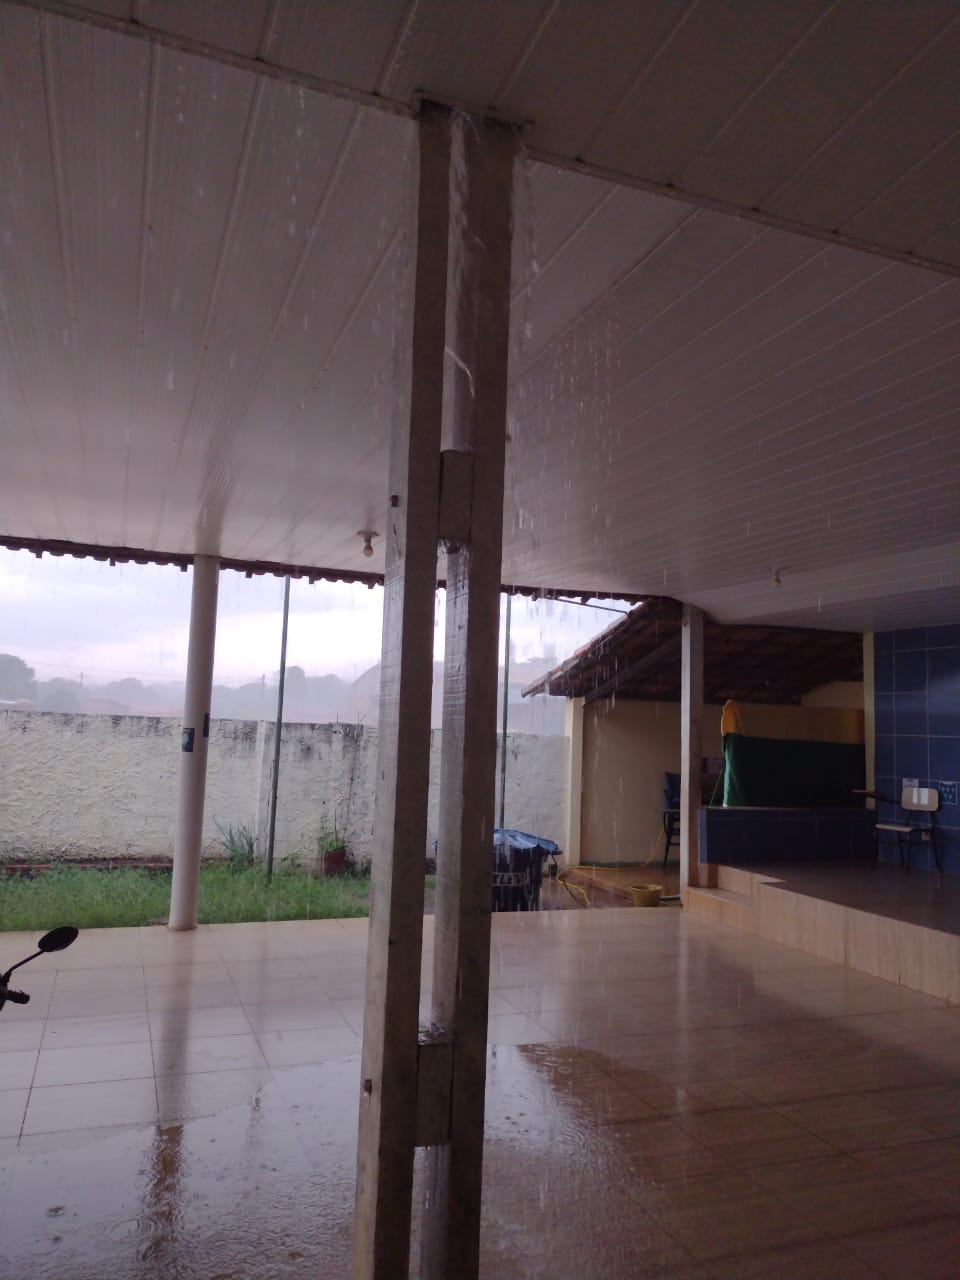 Vândalos depredam escola no Barreirão (GO), com até dejetos humanos sobre mesas; comunidade reclama de abandono